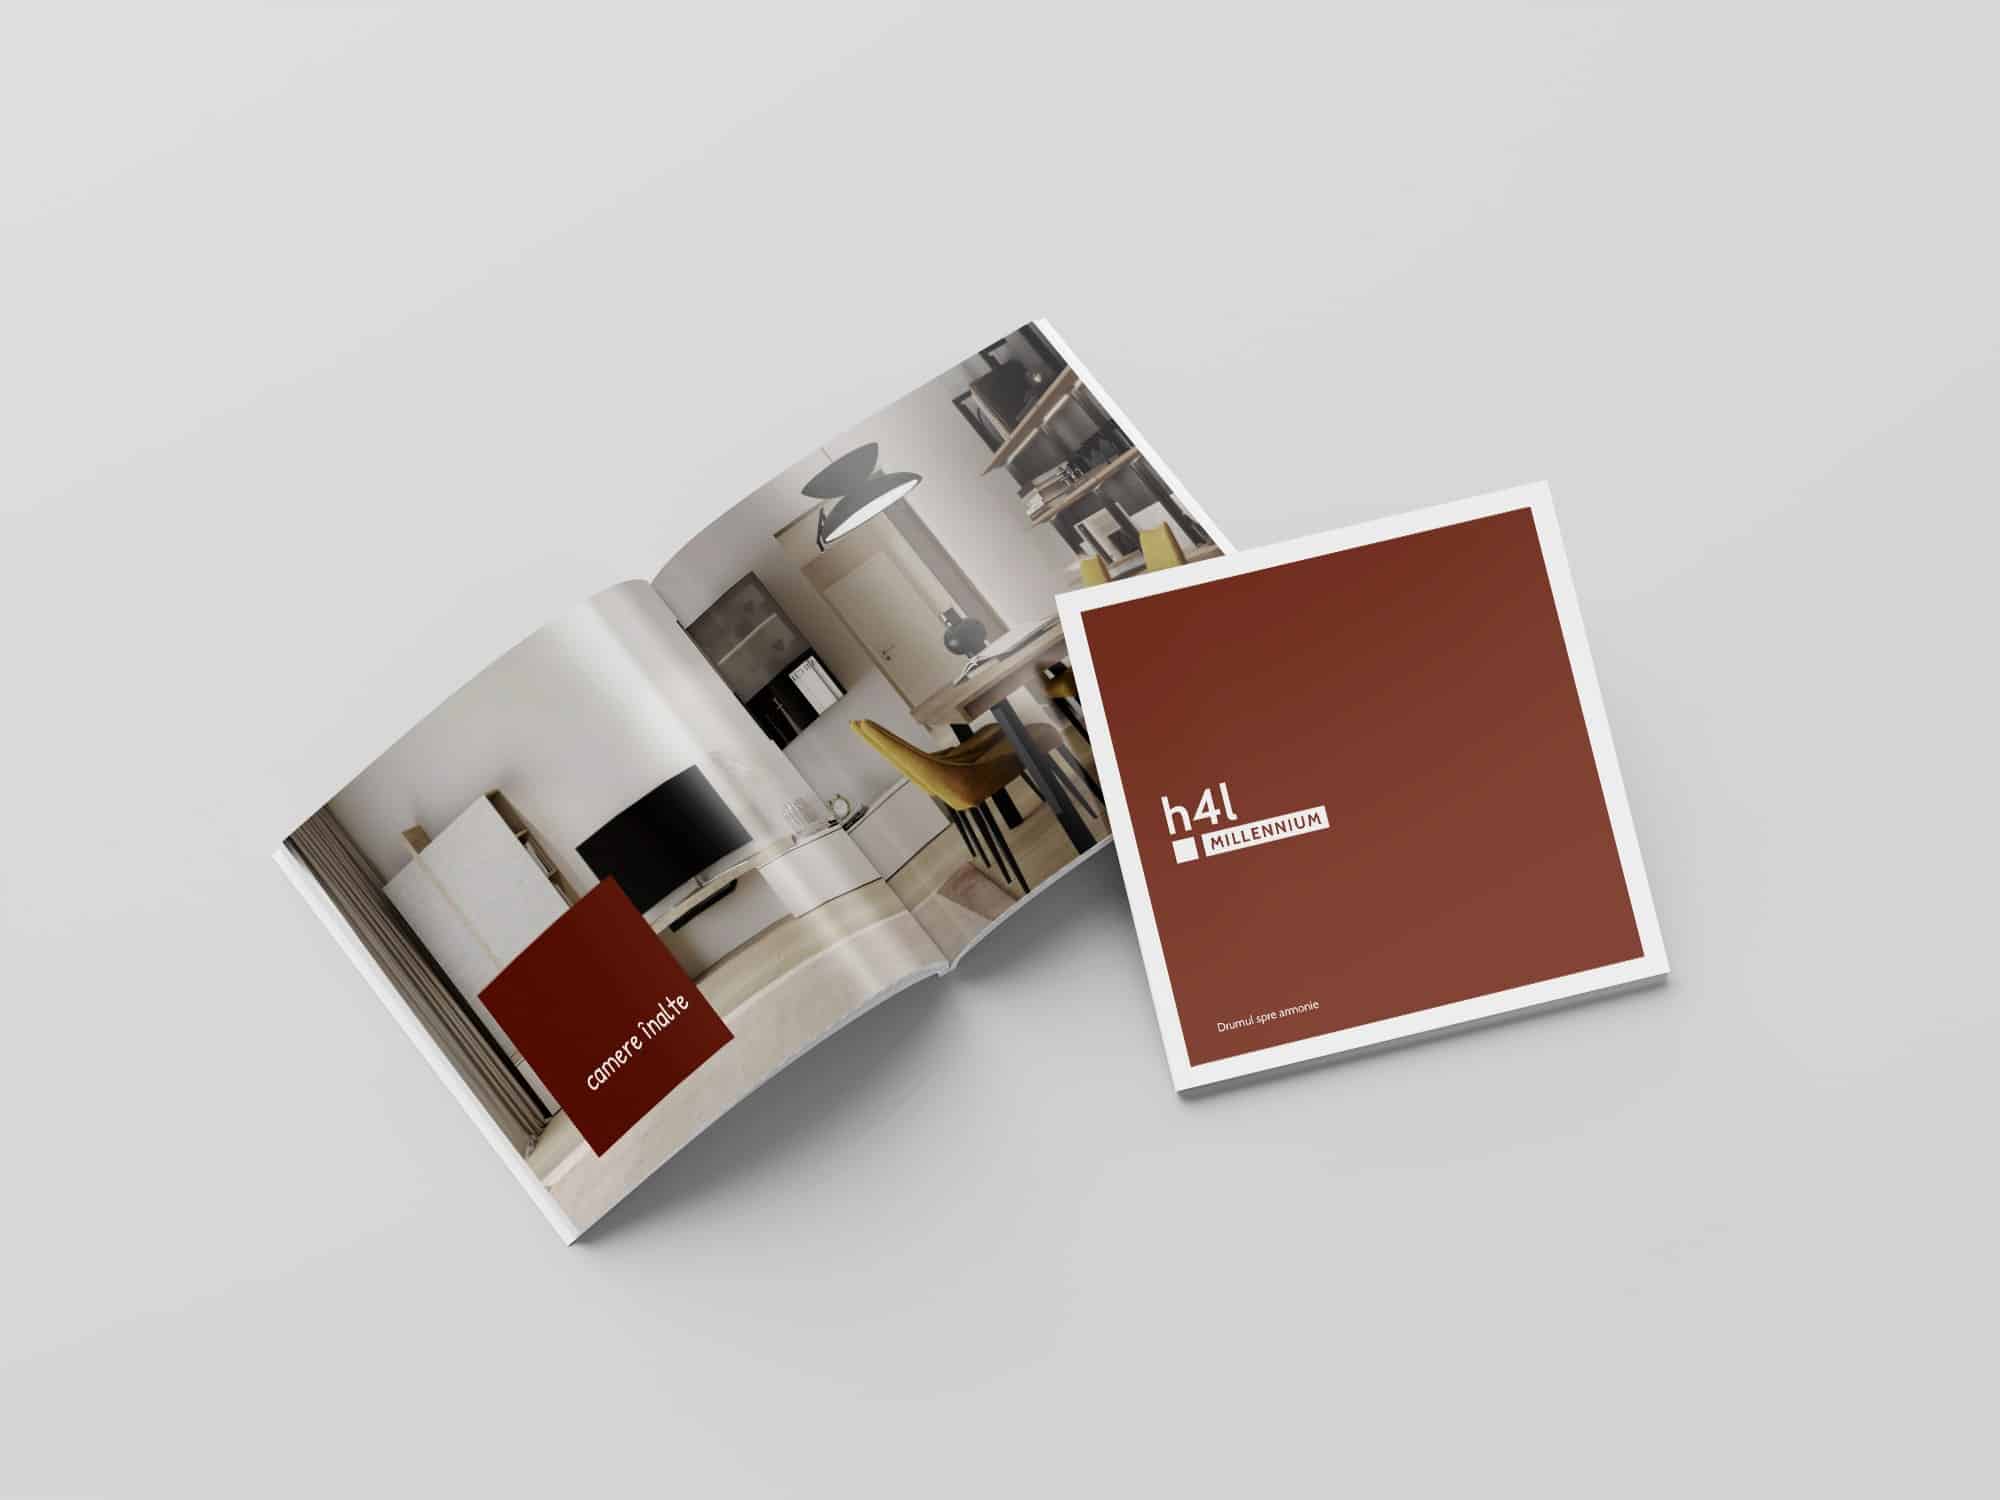 h4l MILLENNIUM, brosura prezentare cartier, publishing design, h4l, Toud